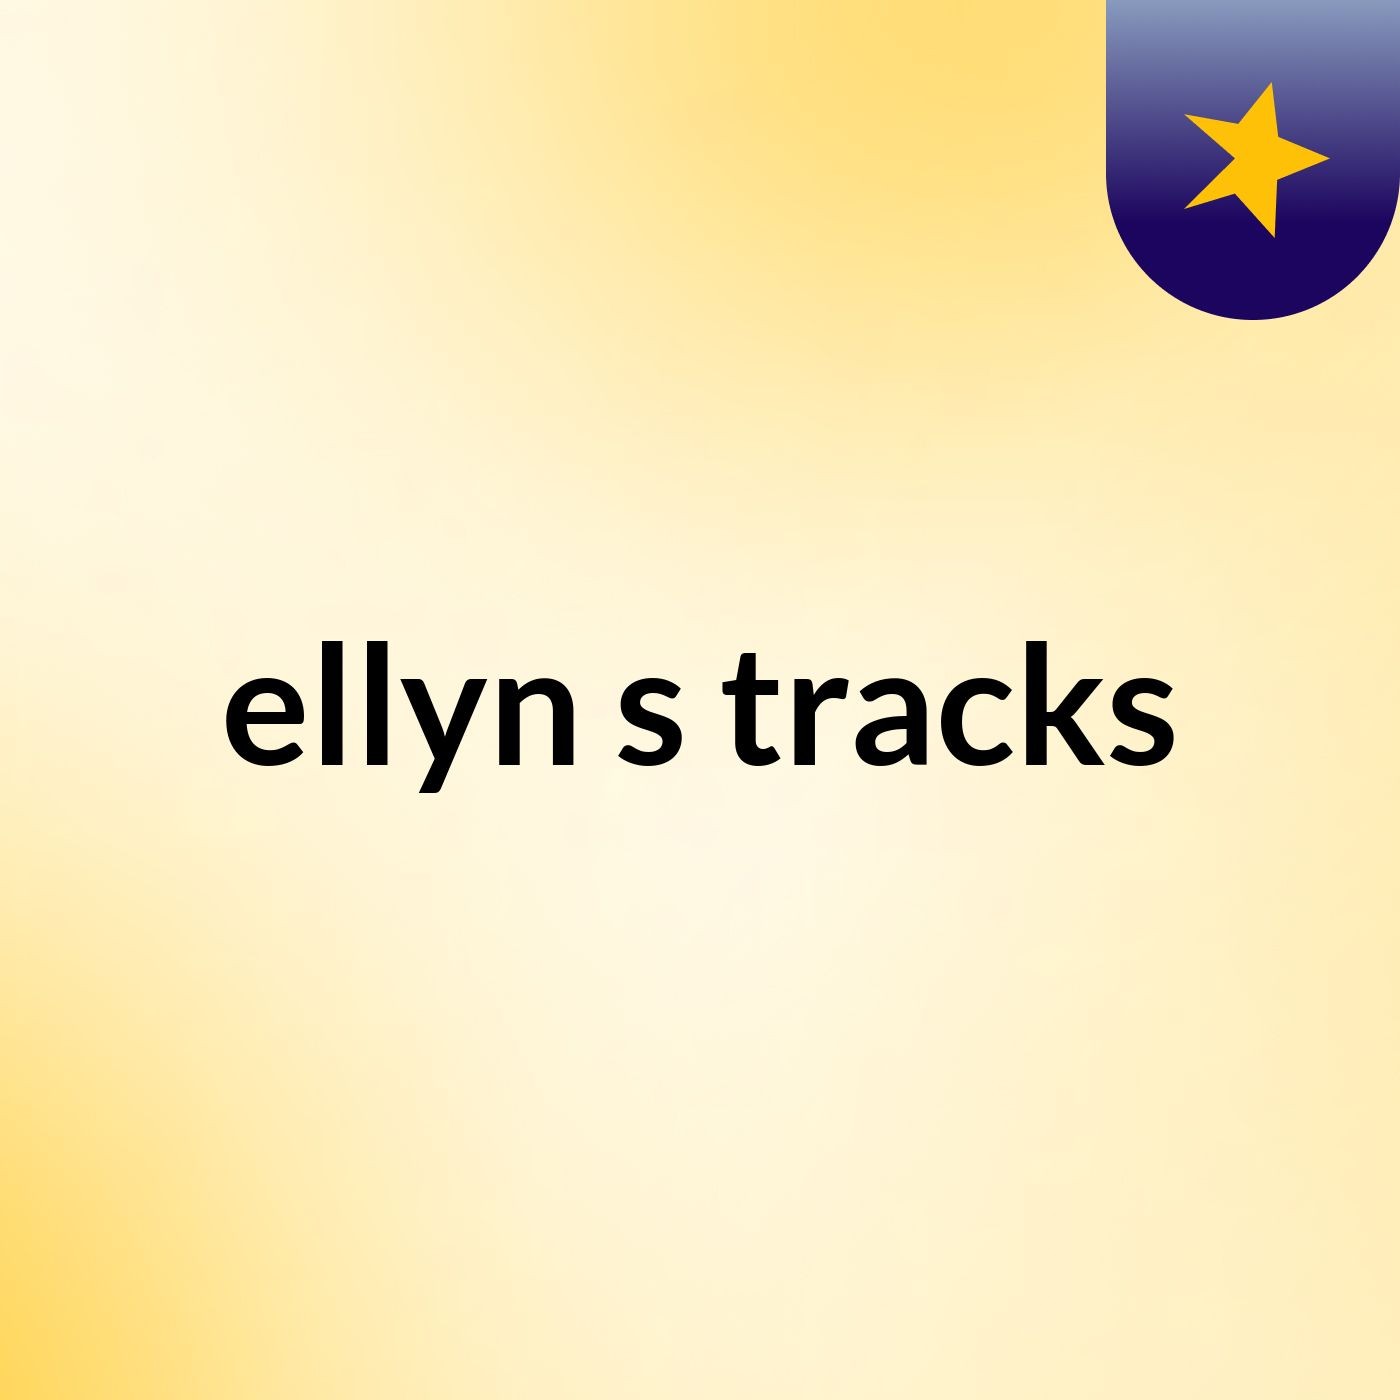 ellyn's tracks